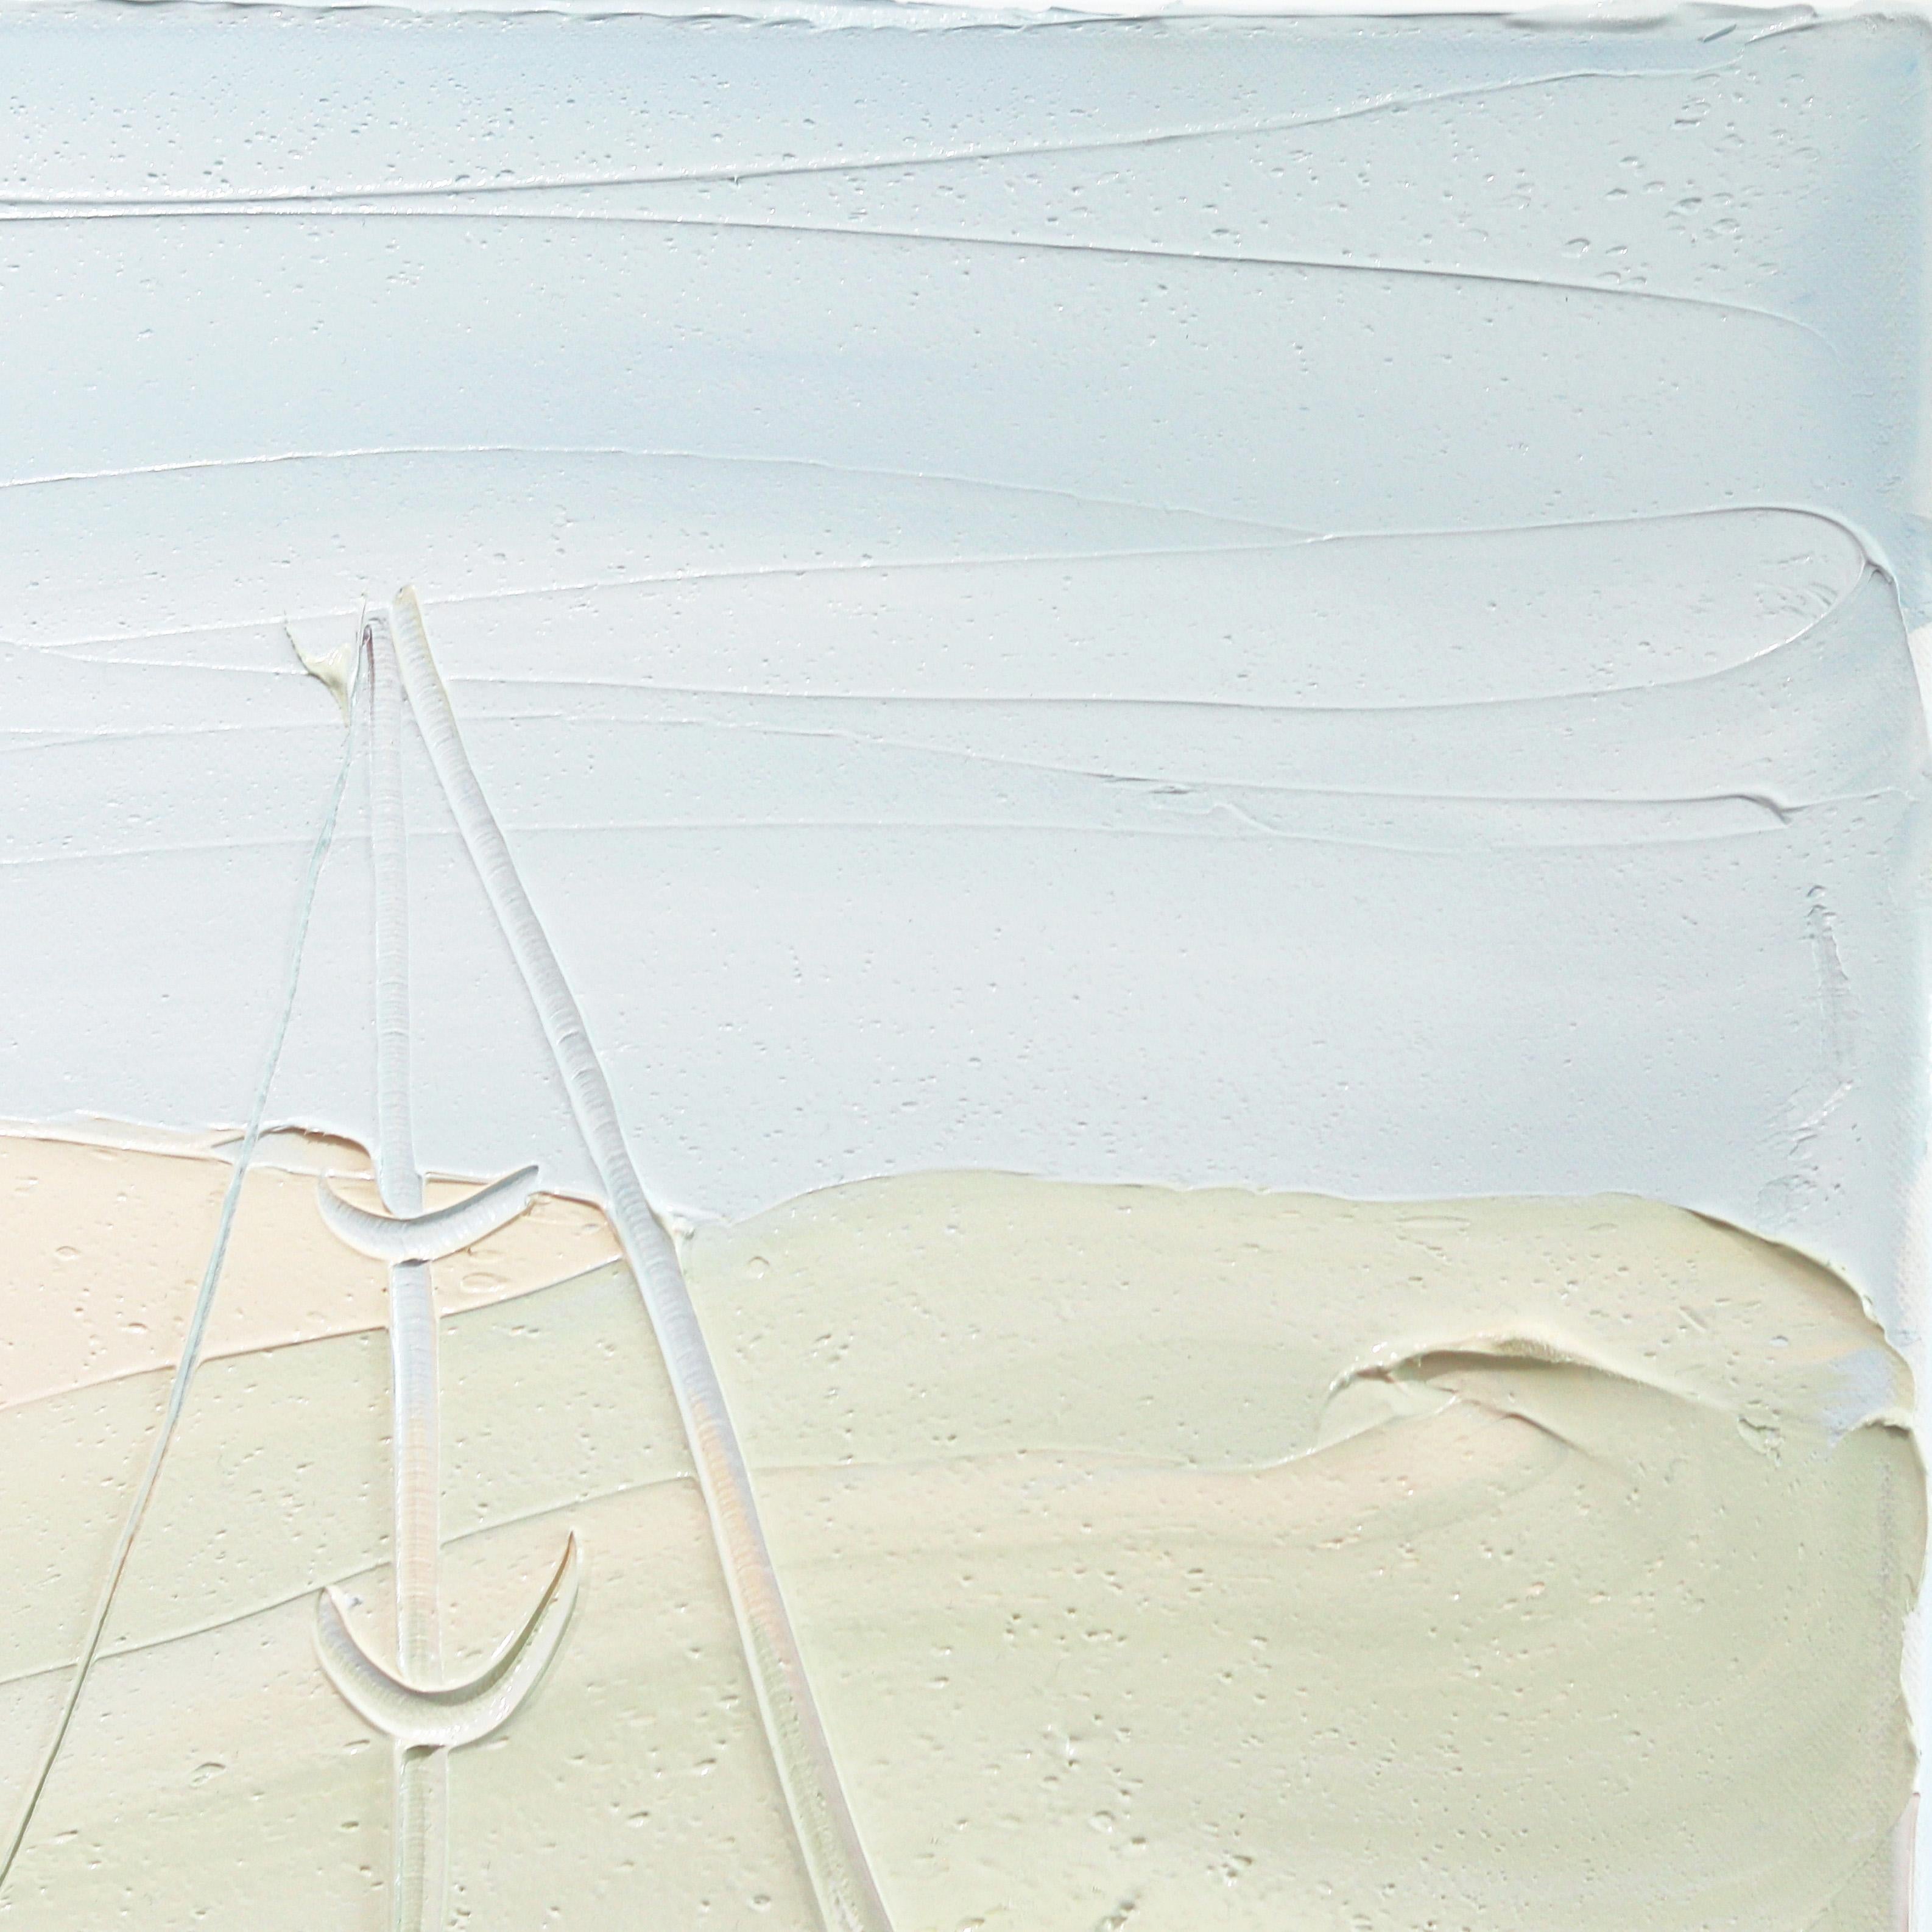 Ce qui rend les peintures à l'huile originales de Sally West si reconnaissables, c'est la combinaison de la texture, de l'abstraction et des couleurs apaisantes. Le mouvement des touches de peinture sur la toile rappelle une brise légère ou des